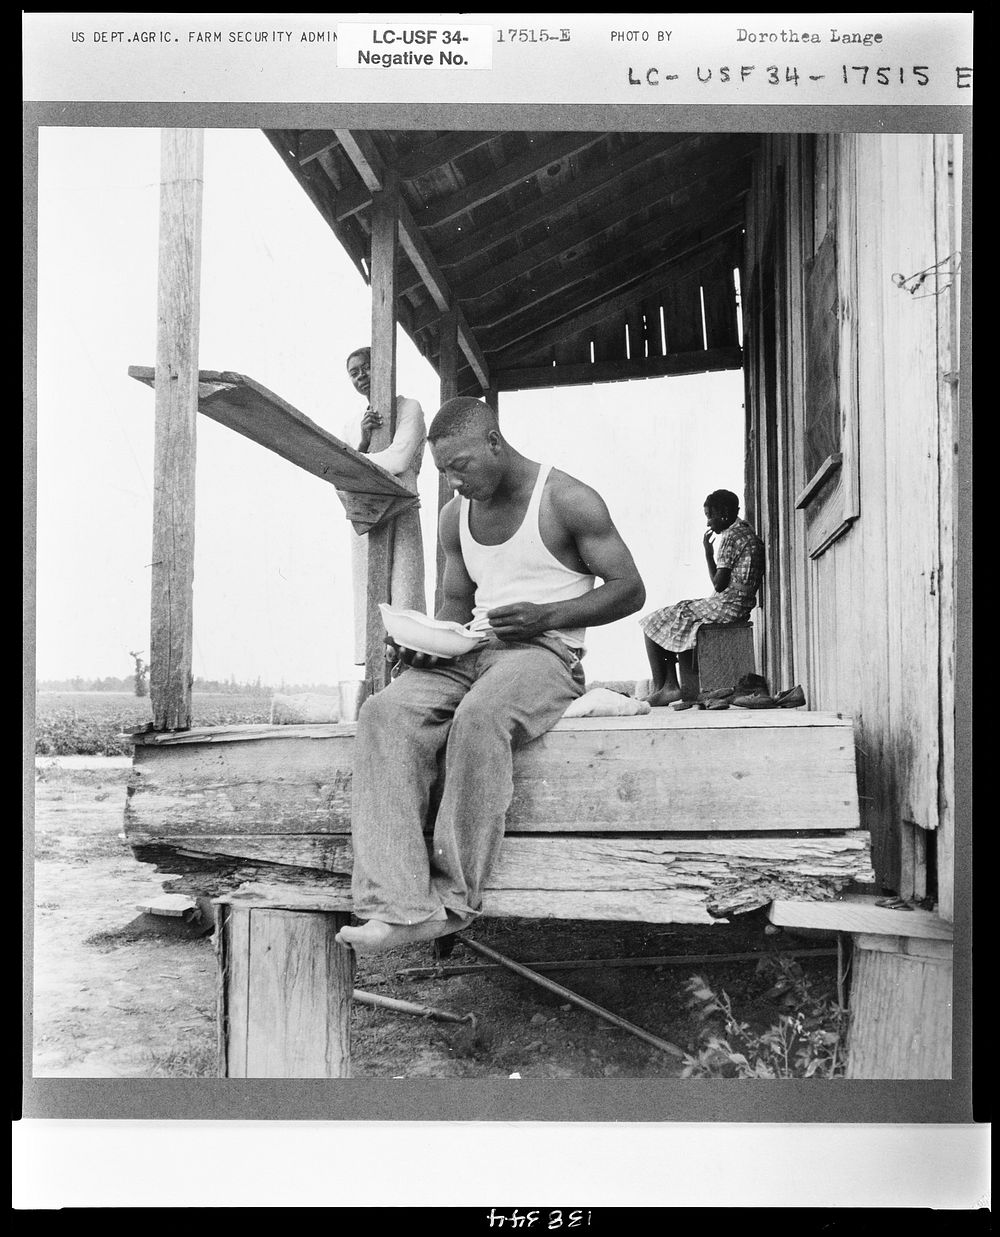 Sharecropper eating near Clarksdale, Mississippi by Dorothea Lange